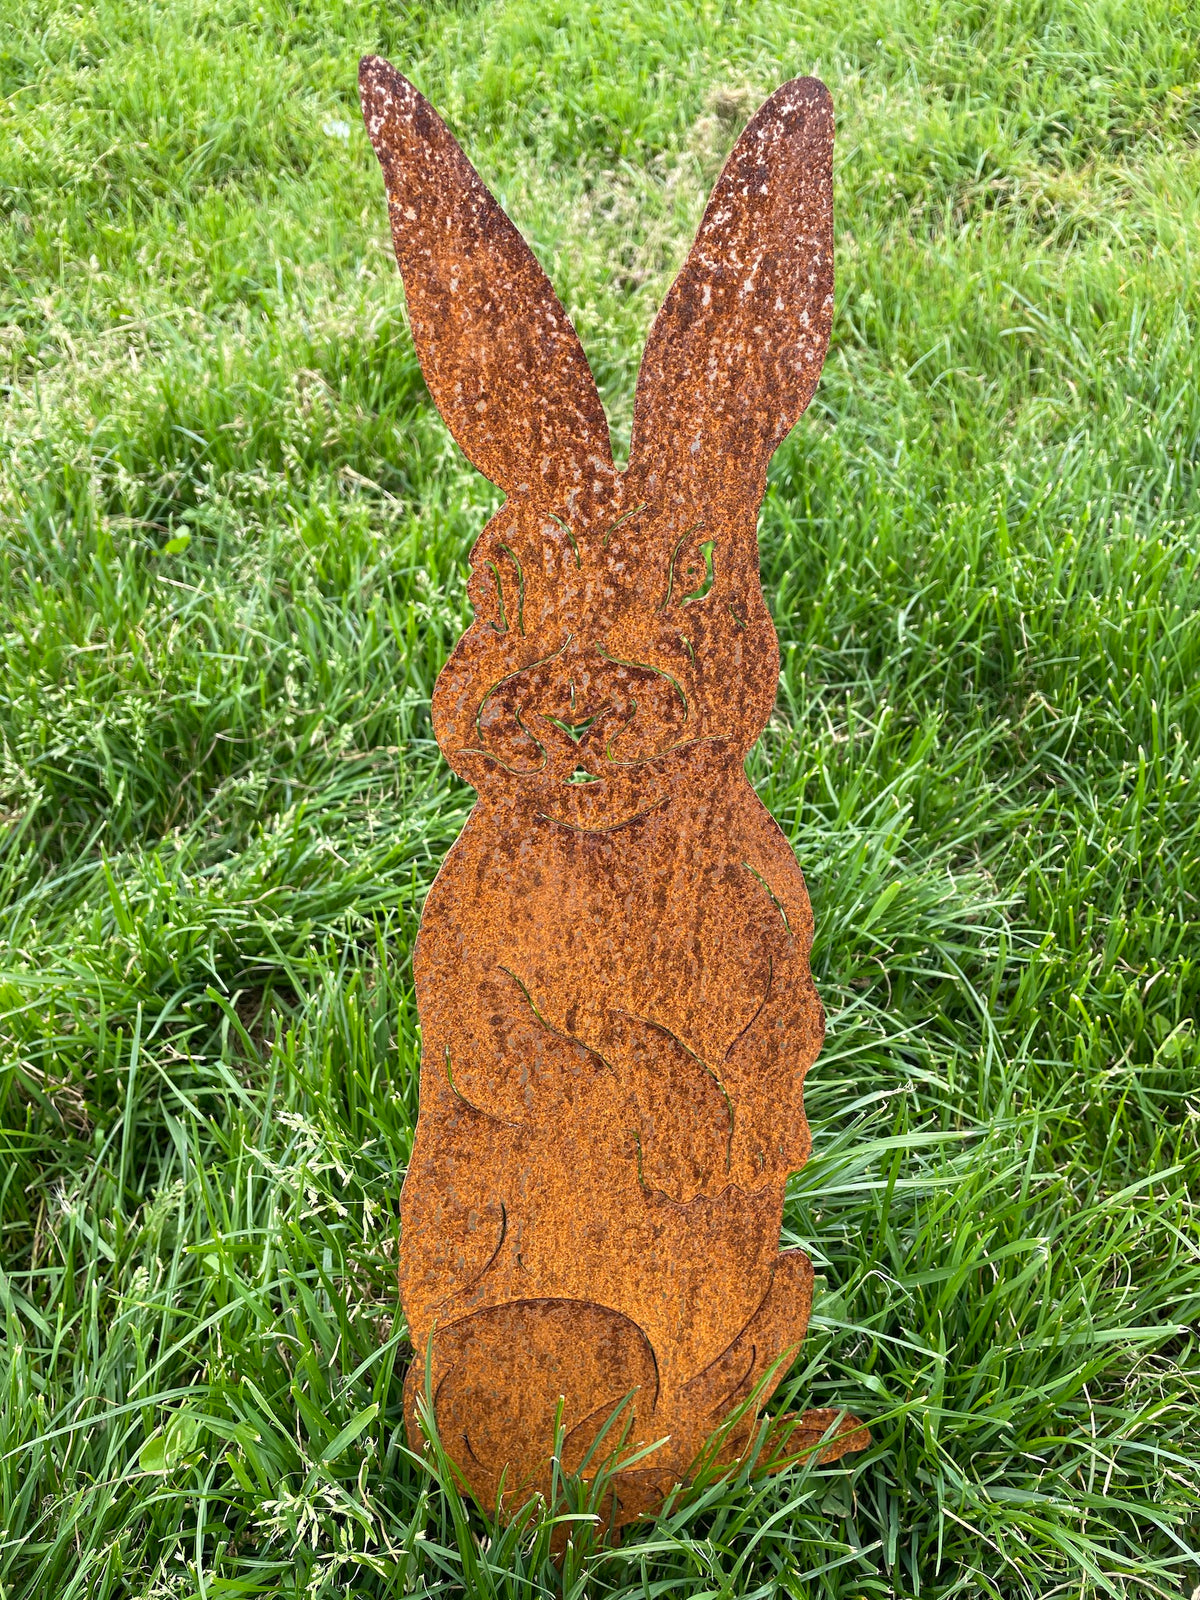 Metal Garden Rabbit &gt;&gt; Rustic Art